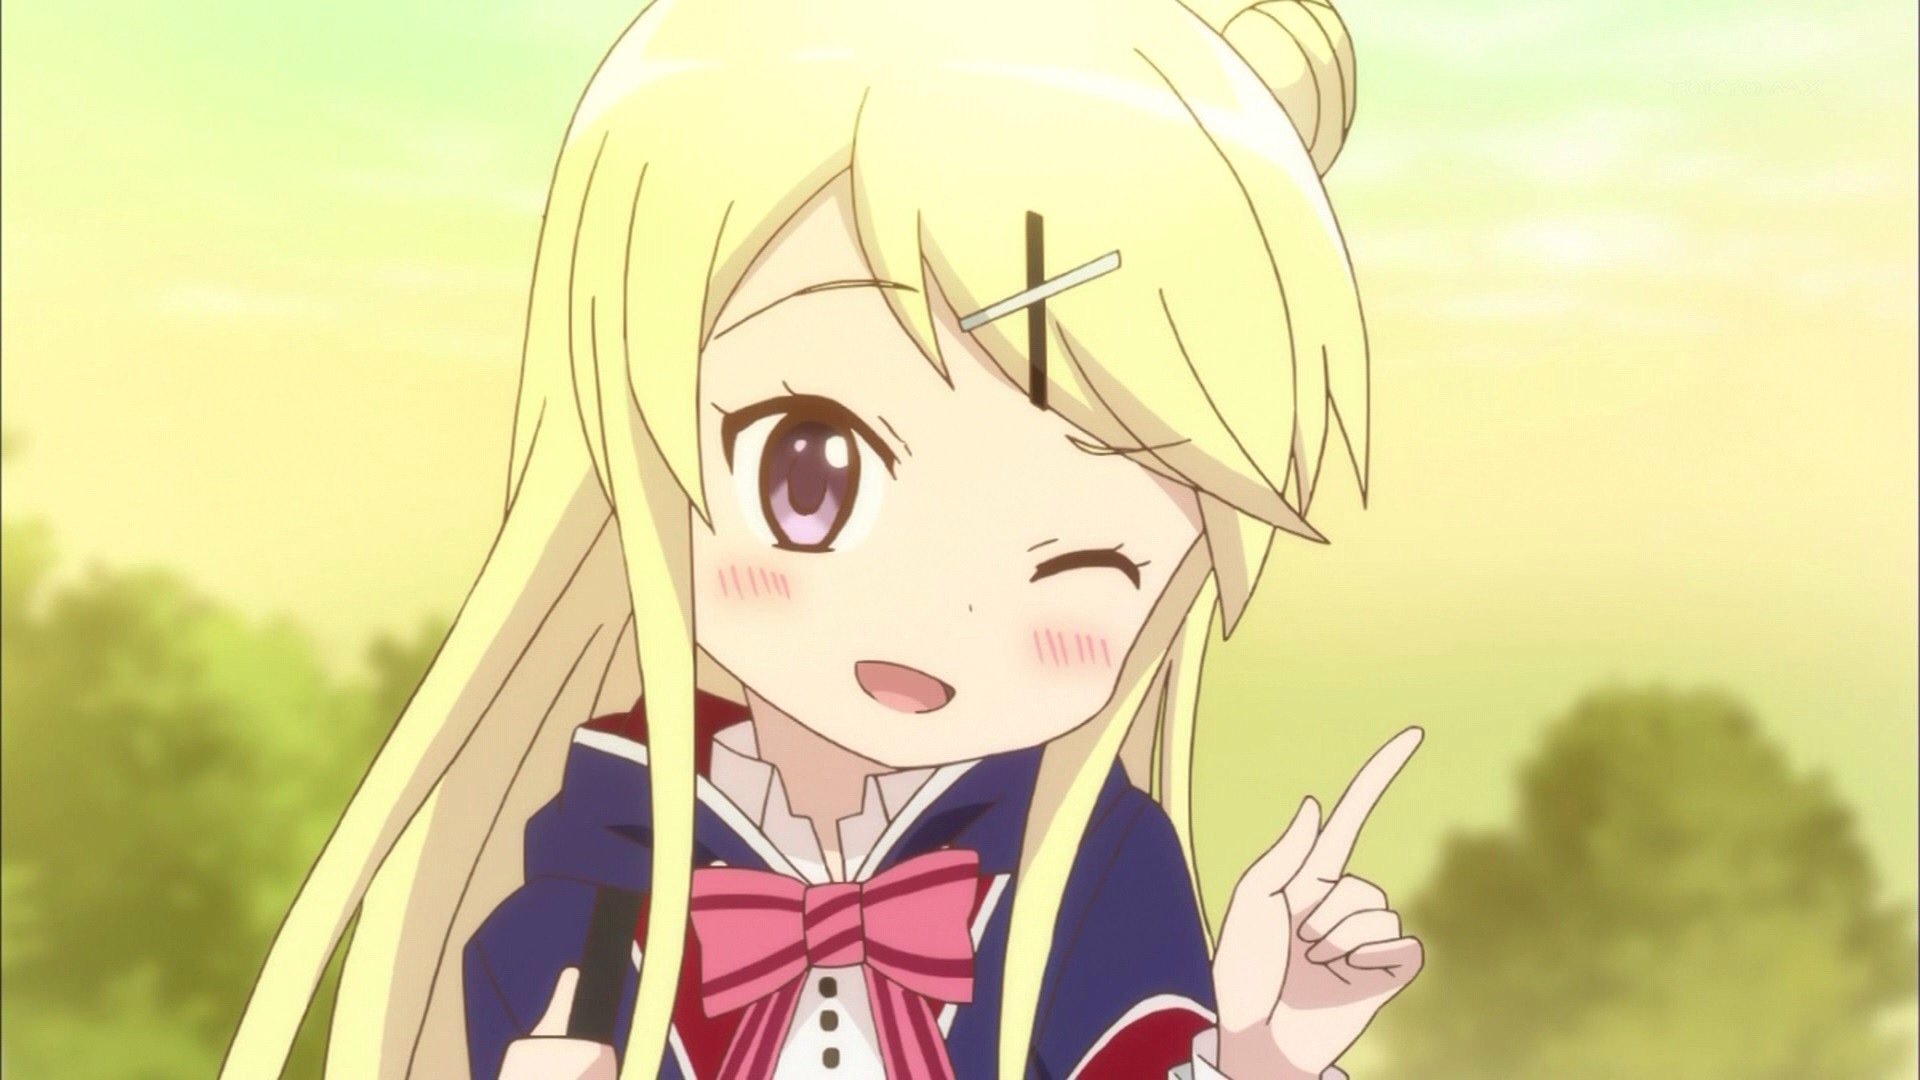 Kiririn в Twitter: "Cute anime girls doing the finger wink pose…